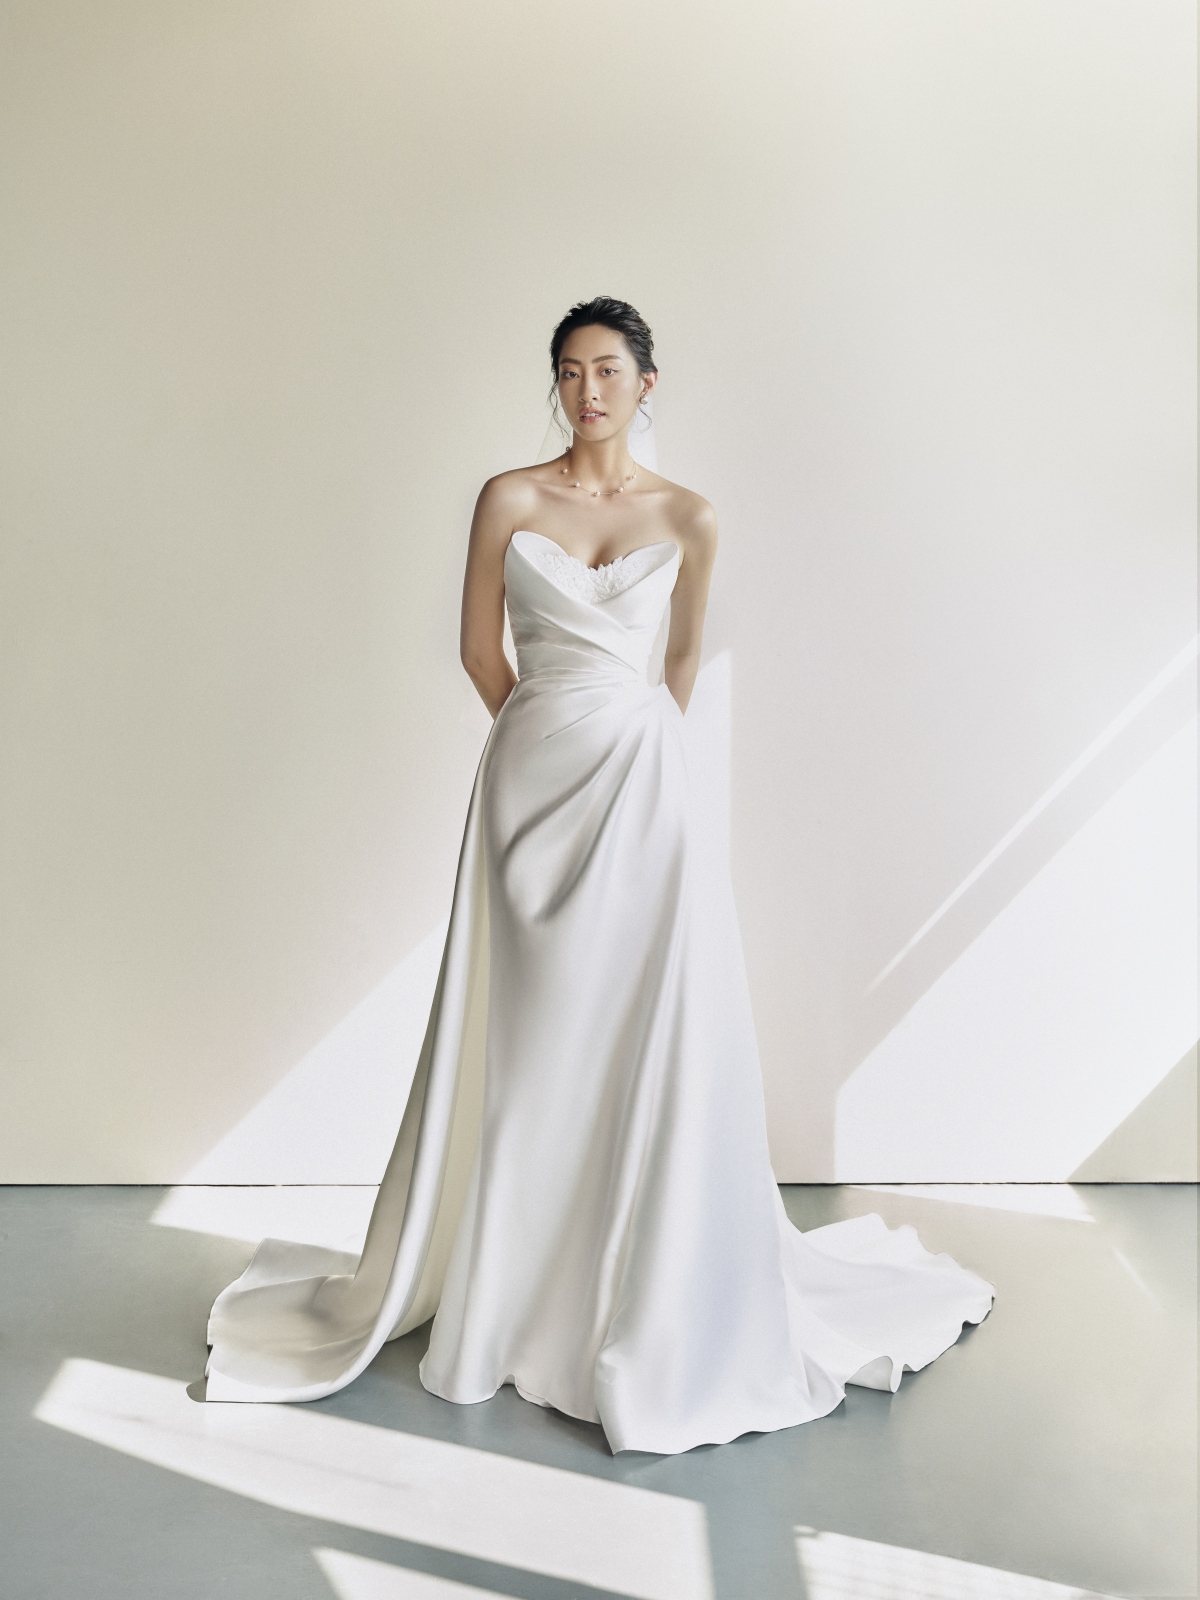 Hoa hậu Lương Thùy Linh làm cô dâu đẹp thanh khiết trong bộ ảnh mới - Ảnh 11.